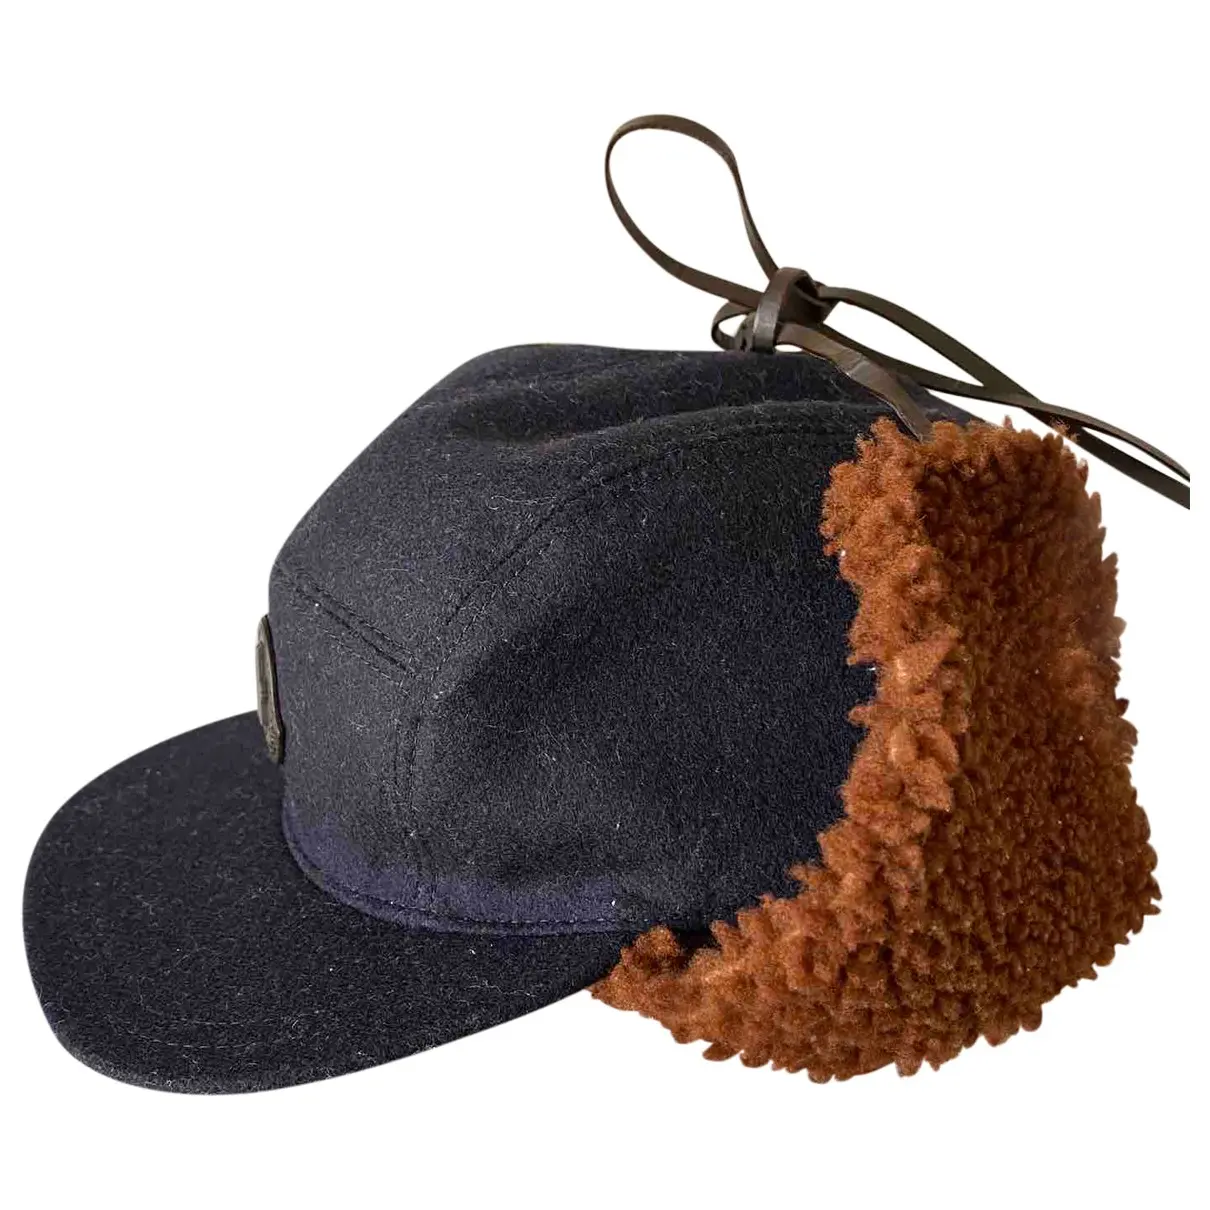 Wool hat Moncler